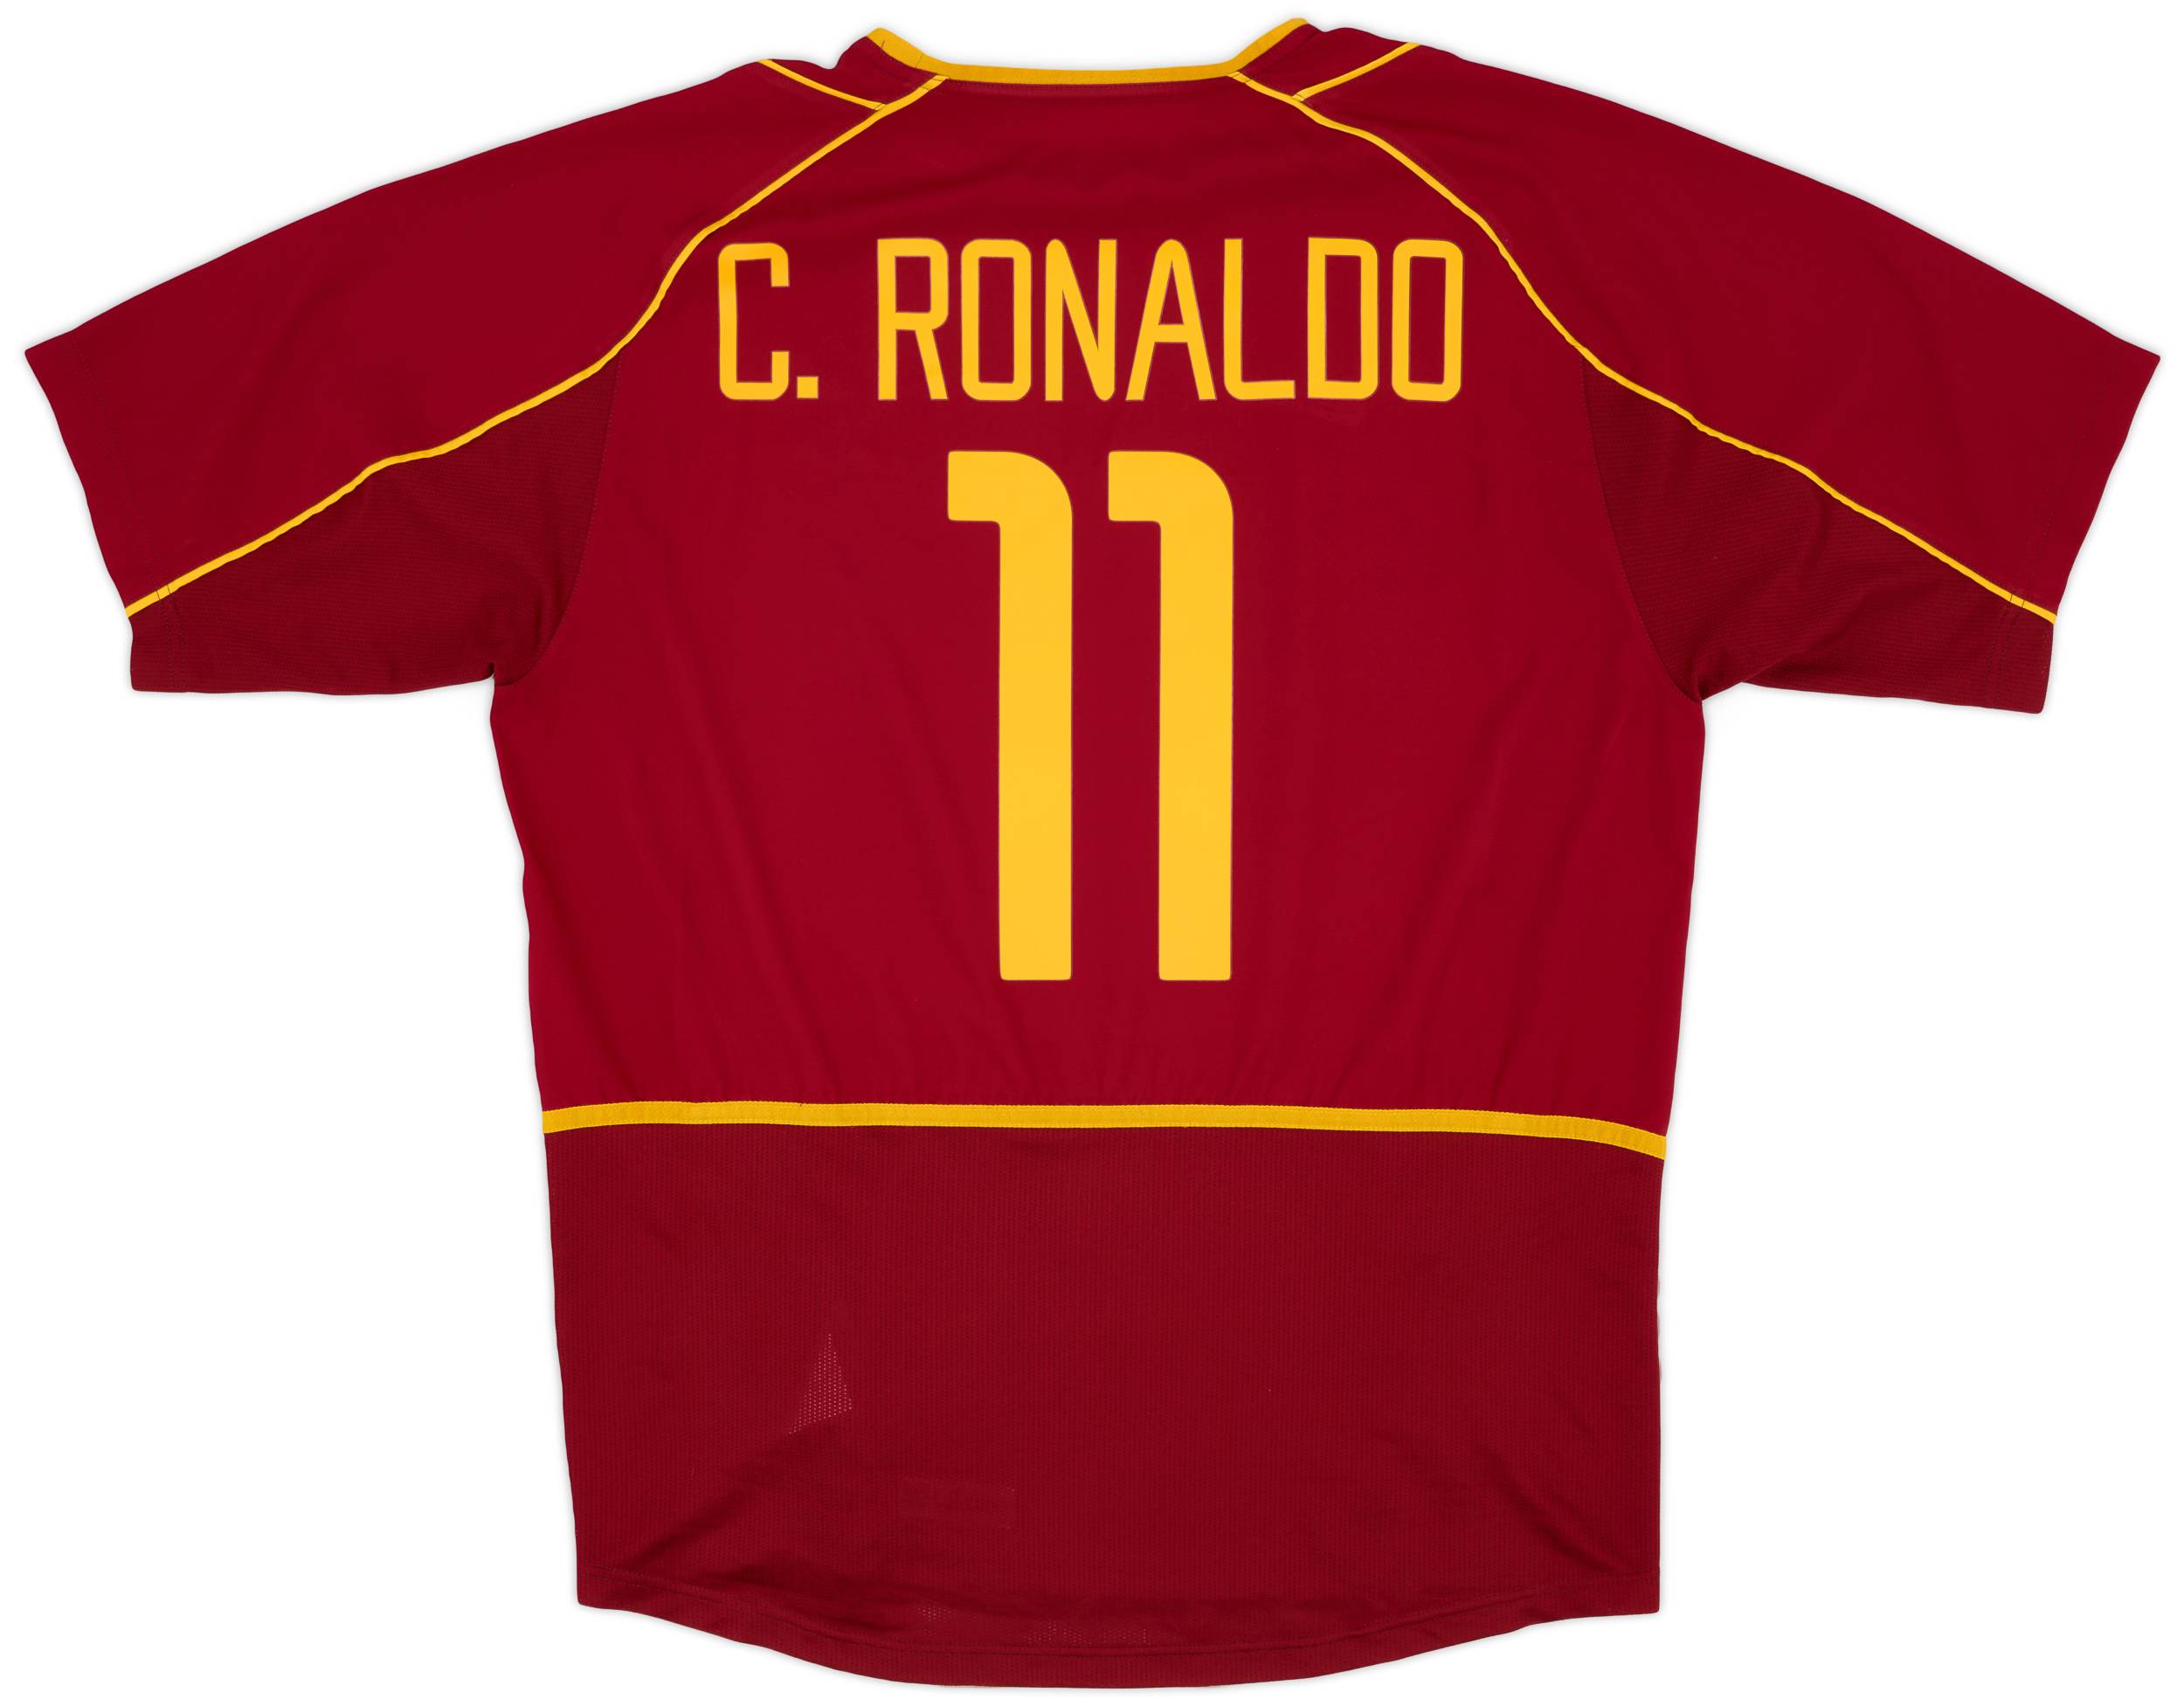 2002-04 Portugal Home Shirt C.Ronaldo #11 - 8/10 - (L)